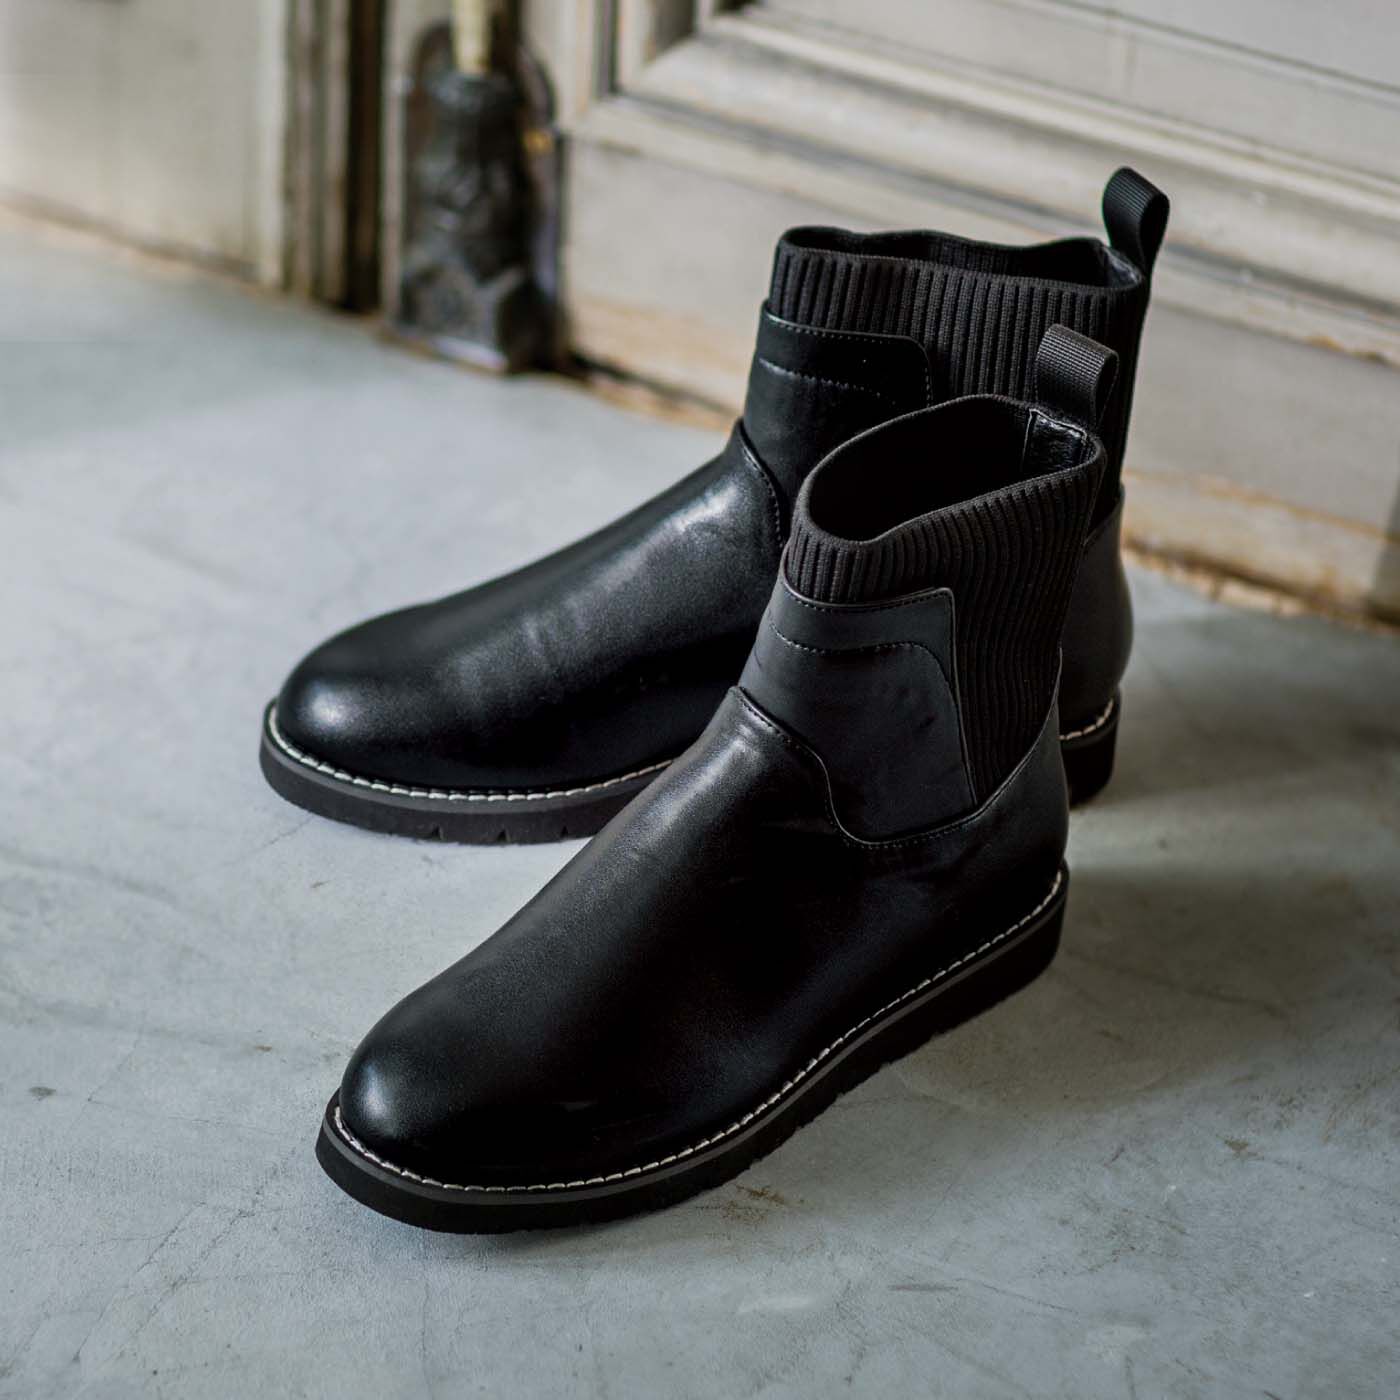 Real Stock|UP.de　きちんと見えるのにするんと履ける らくちんニット遣いの防水仕様ブーツ|コーデの定番になりそうな上品カジュアルなブラックブーツ。厚底なのに軽く、ストレッチニットの足口も履きやすい。